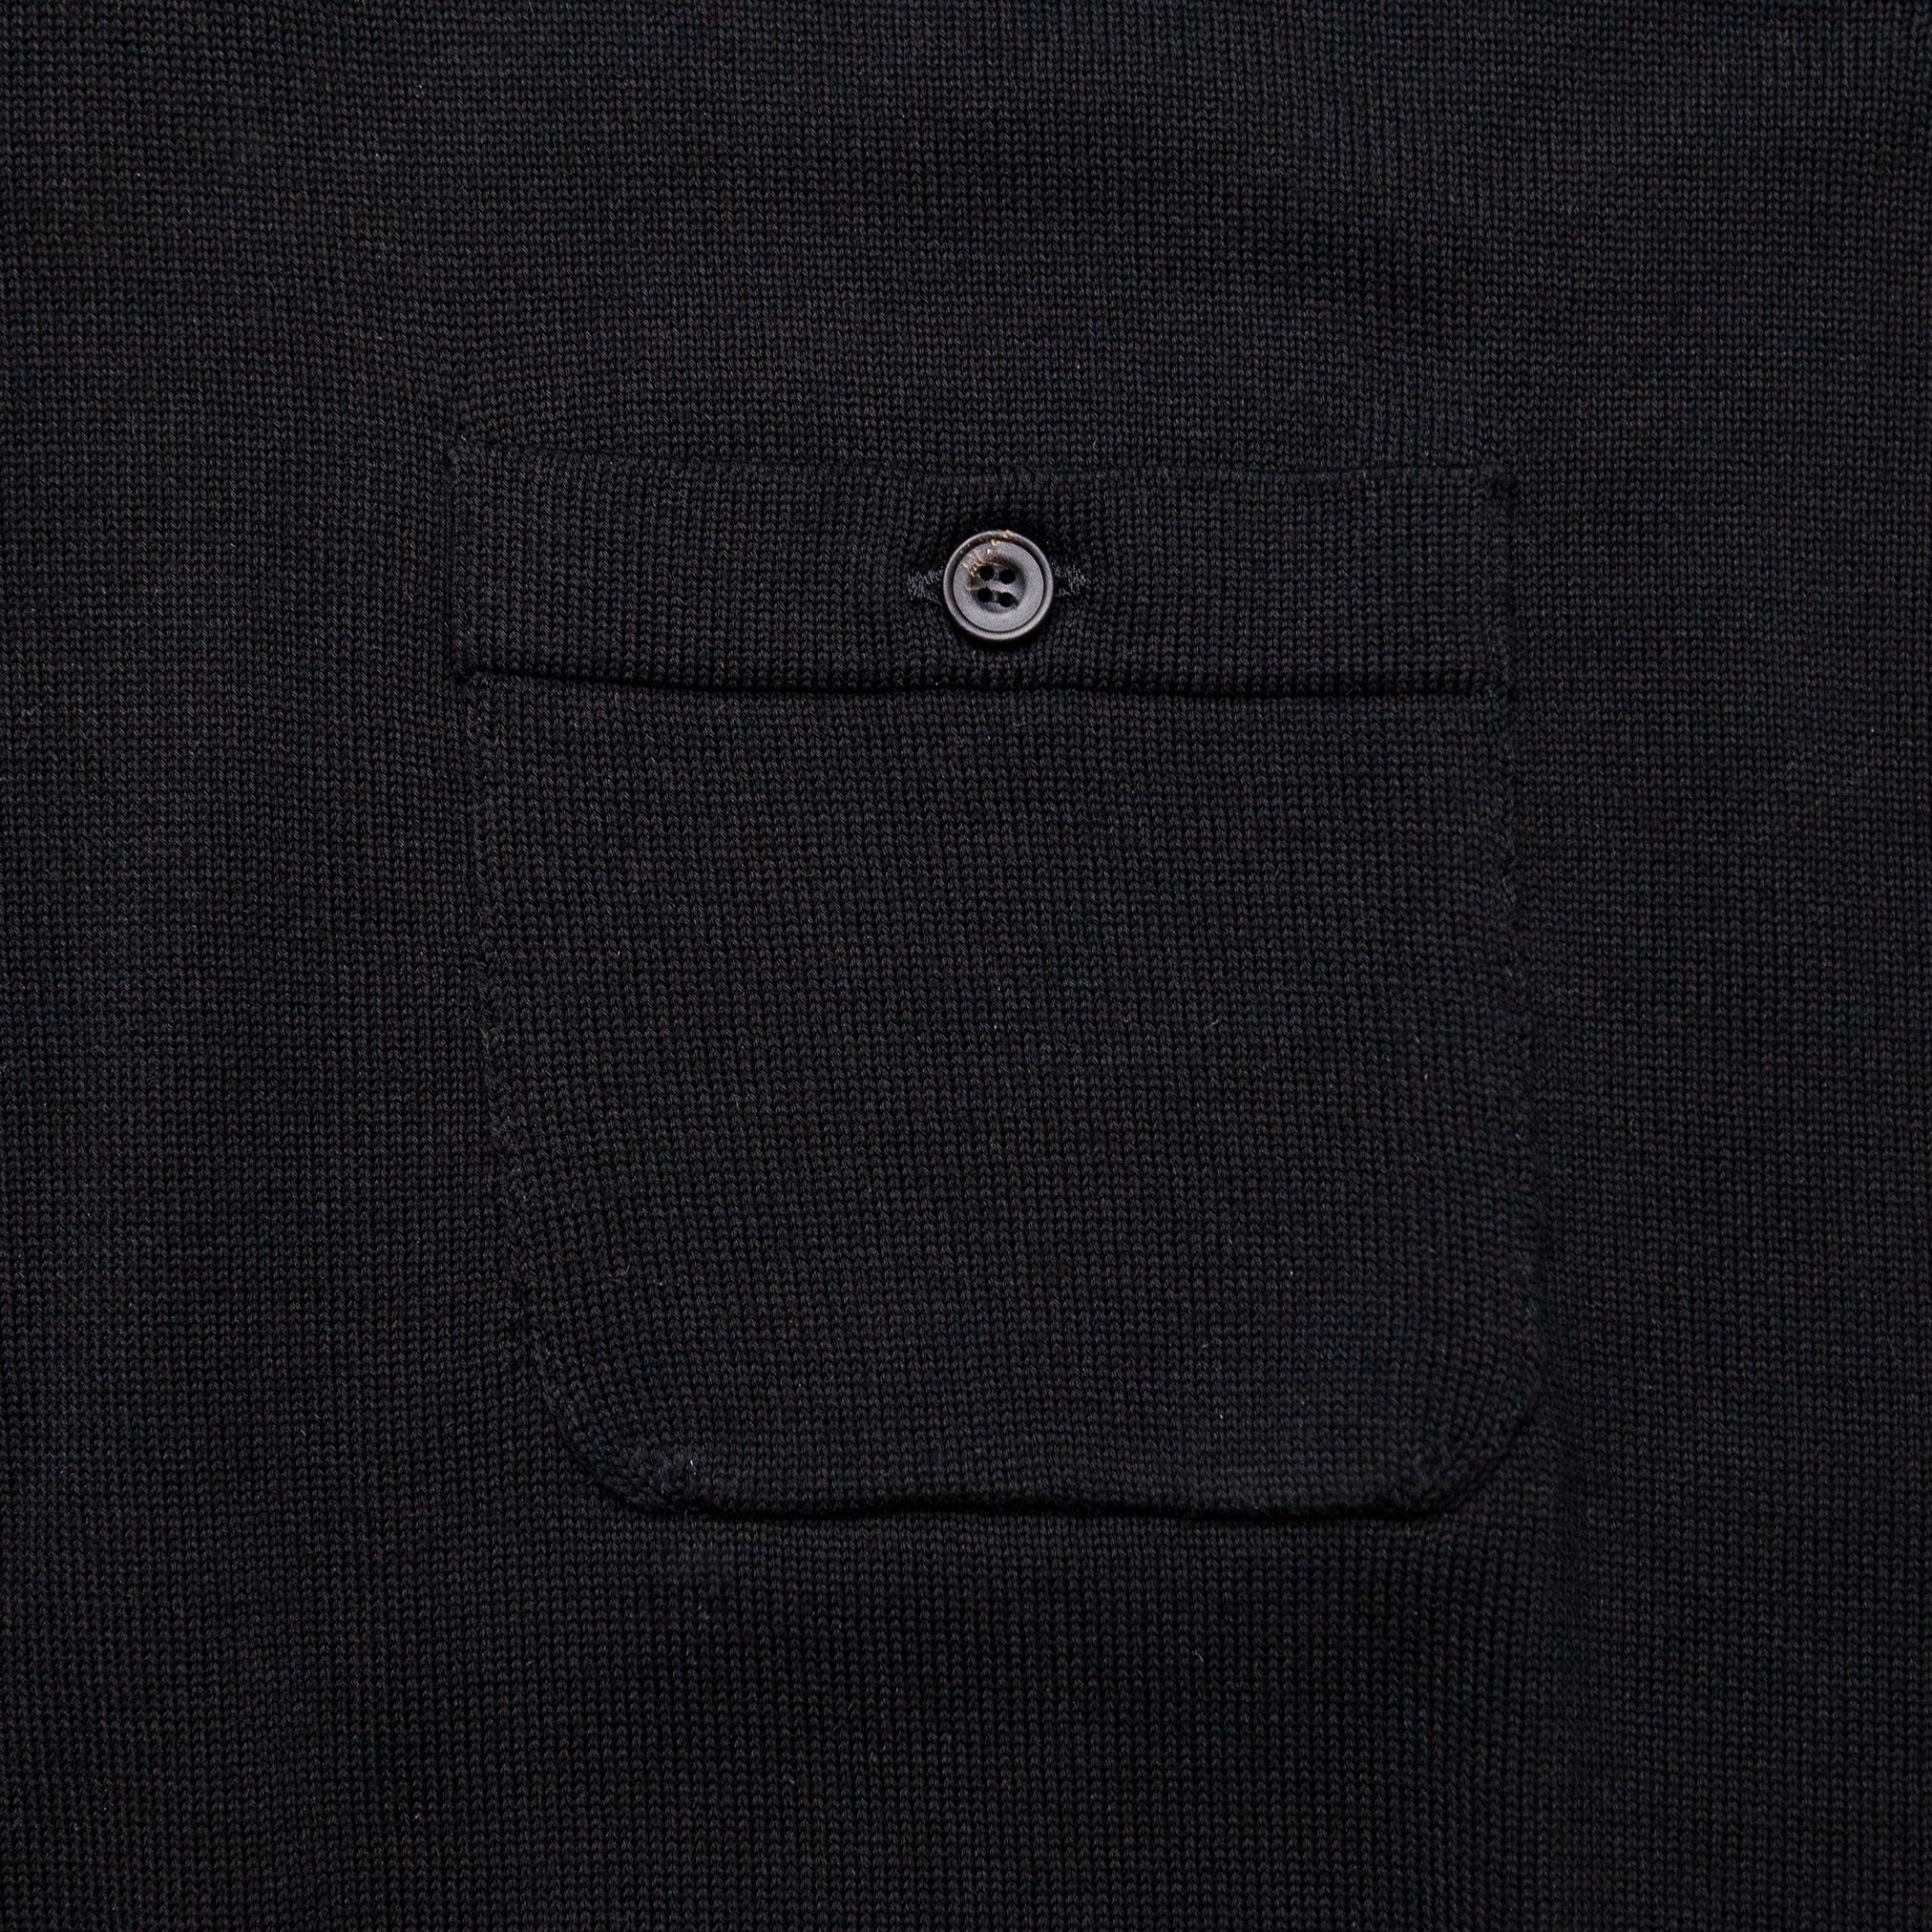 The JFK Pocket Polo in Black